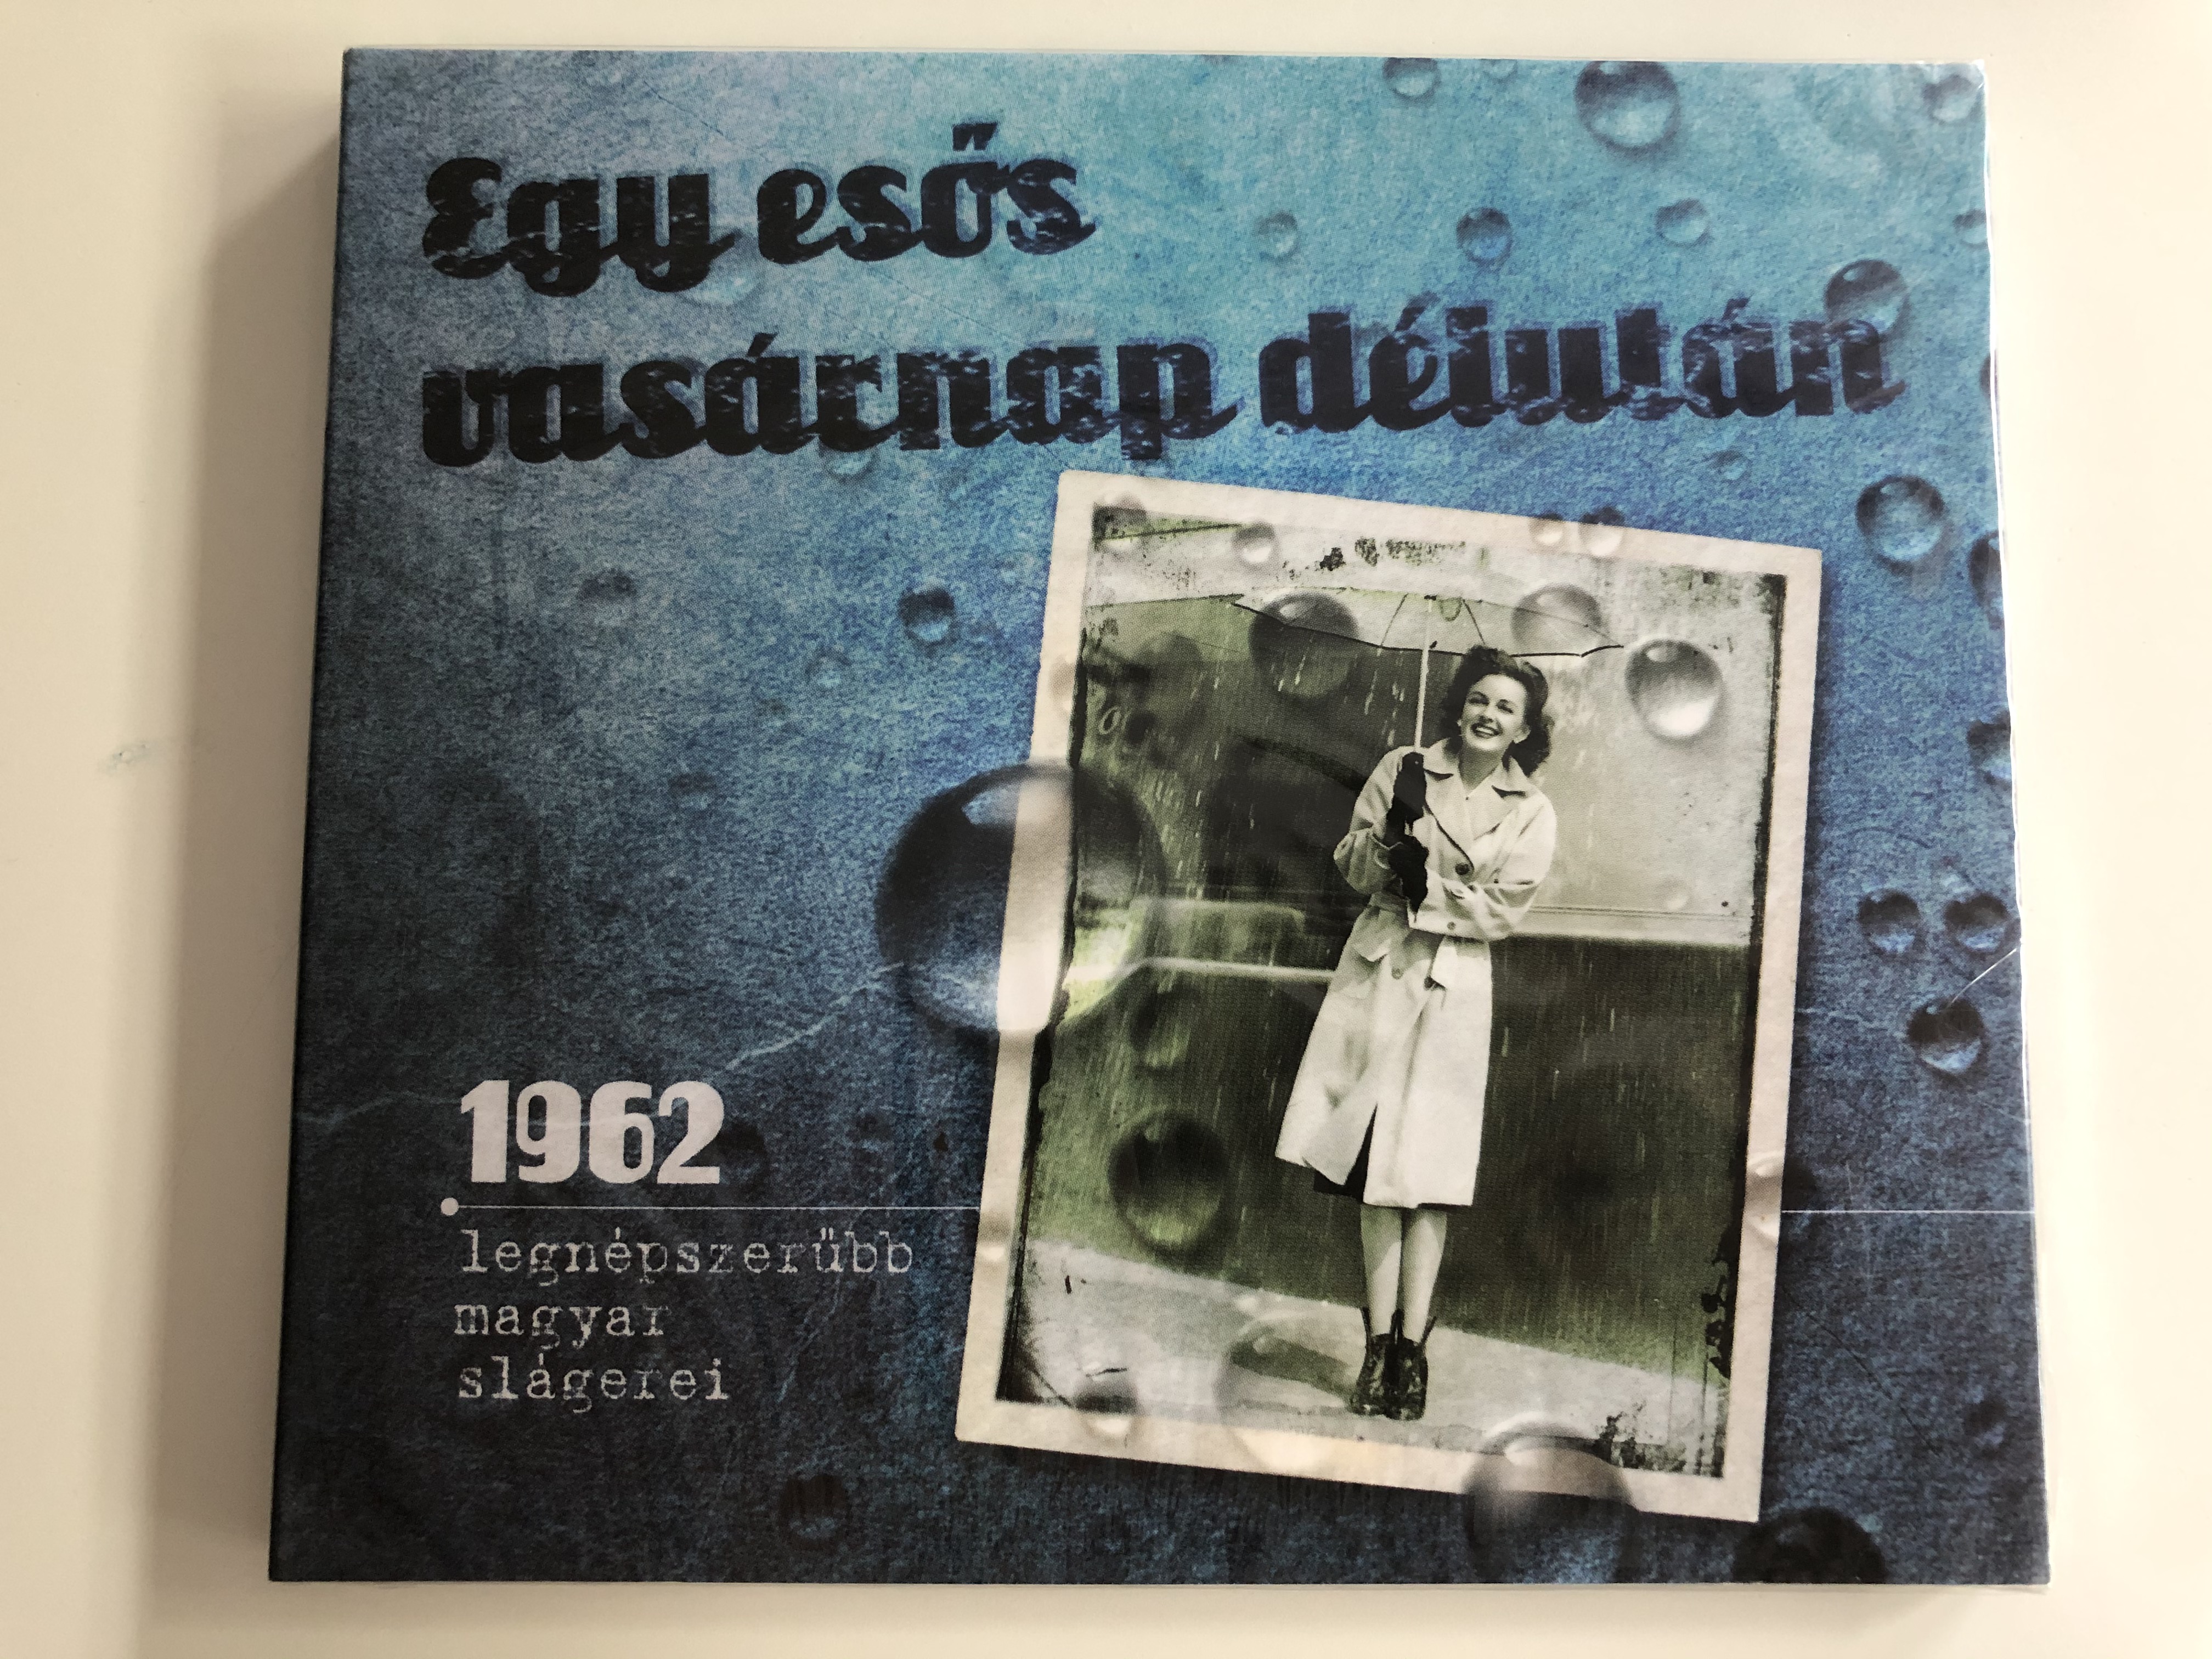 egy-esos-vasarnap-deiutan-1962-legnepszerubb-magyar-slagerei-r-zsav-lgyi-s-t-rsa-audio-cd-2013-r-tcd-077-1-.jpg